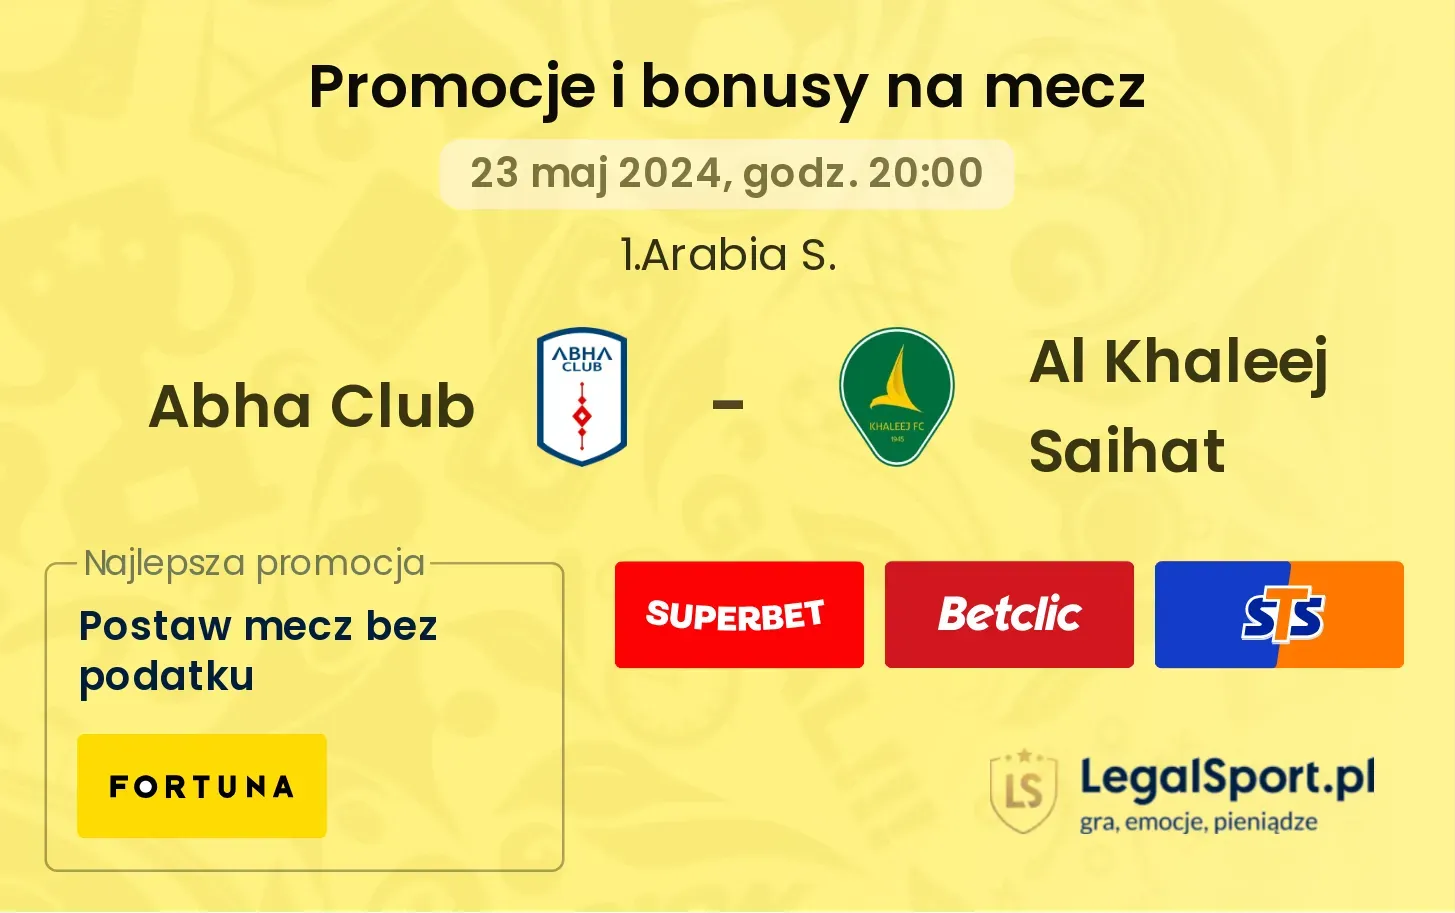 Abha Club - Al Khaleej Saihat promocje bonusy na mecz